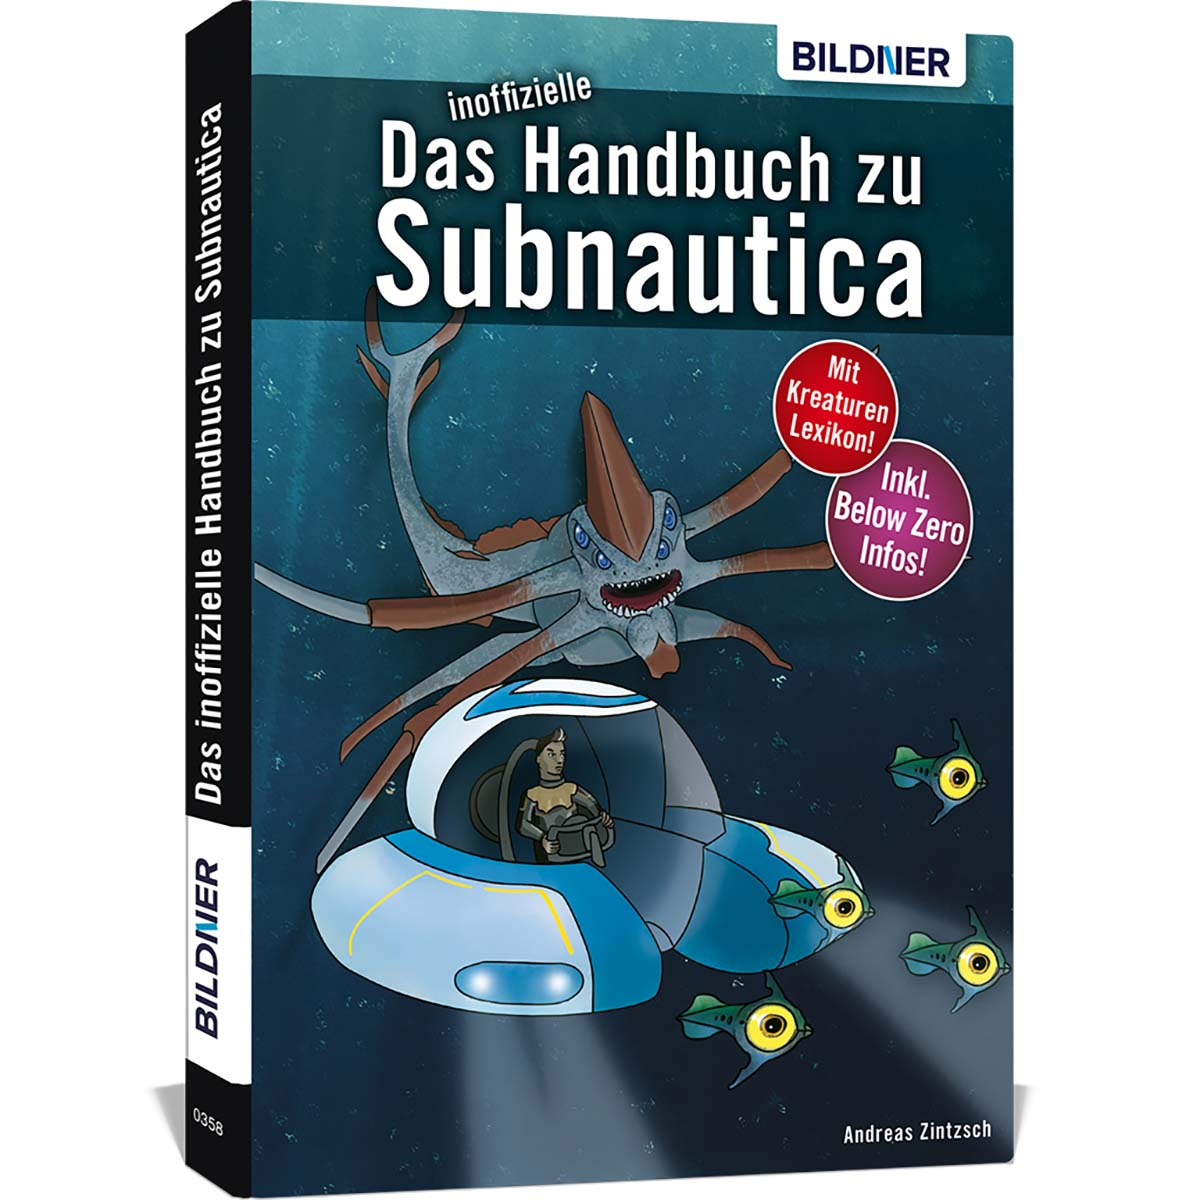 zu inoffizielle Handbuch Das Subnautica